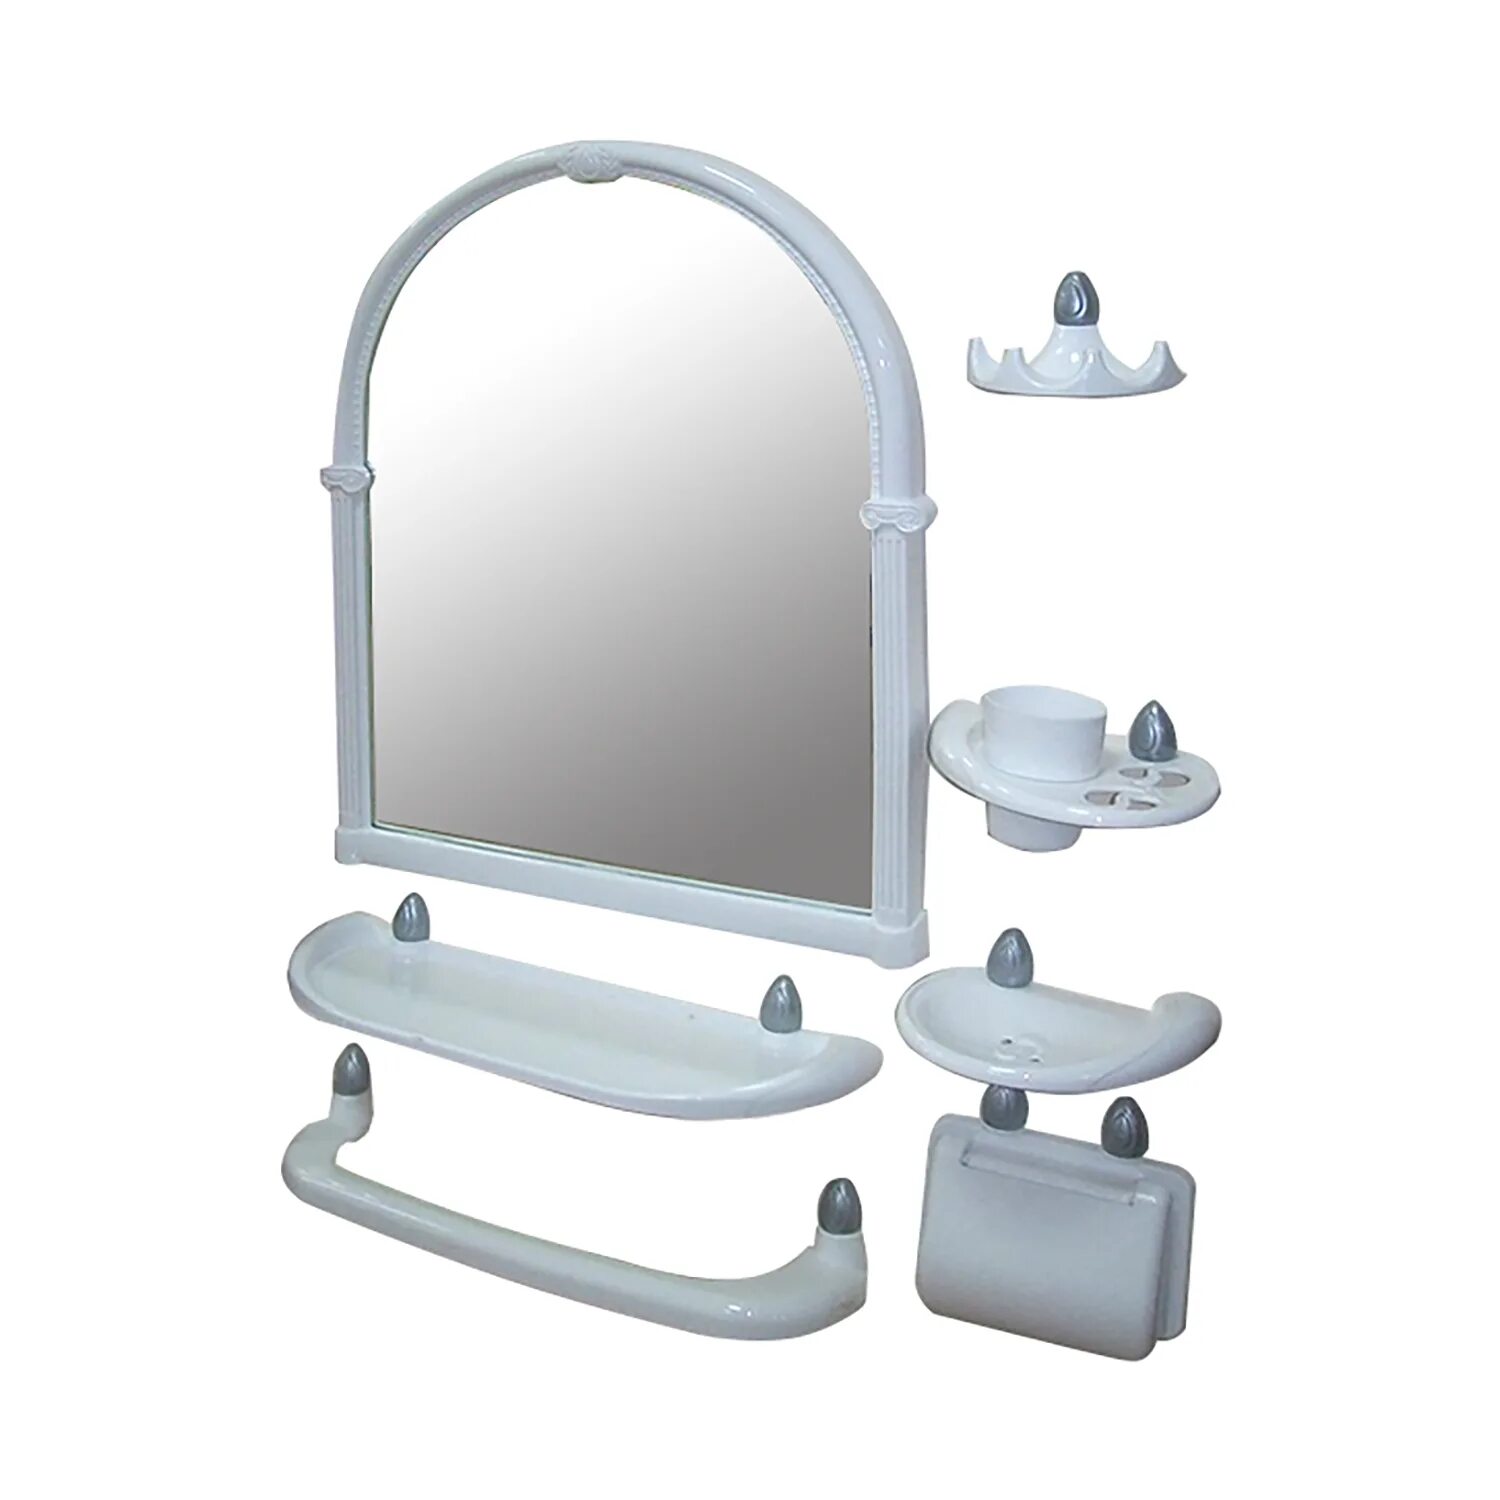 Набор д/ванной комнаты с зеркалом Олимпия (6 предметов) белый. Зеркальный набор для ванной комнаты артикул РП-861. Зеркальный набор Олимпия. Набор для ванной с зеркалом